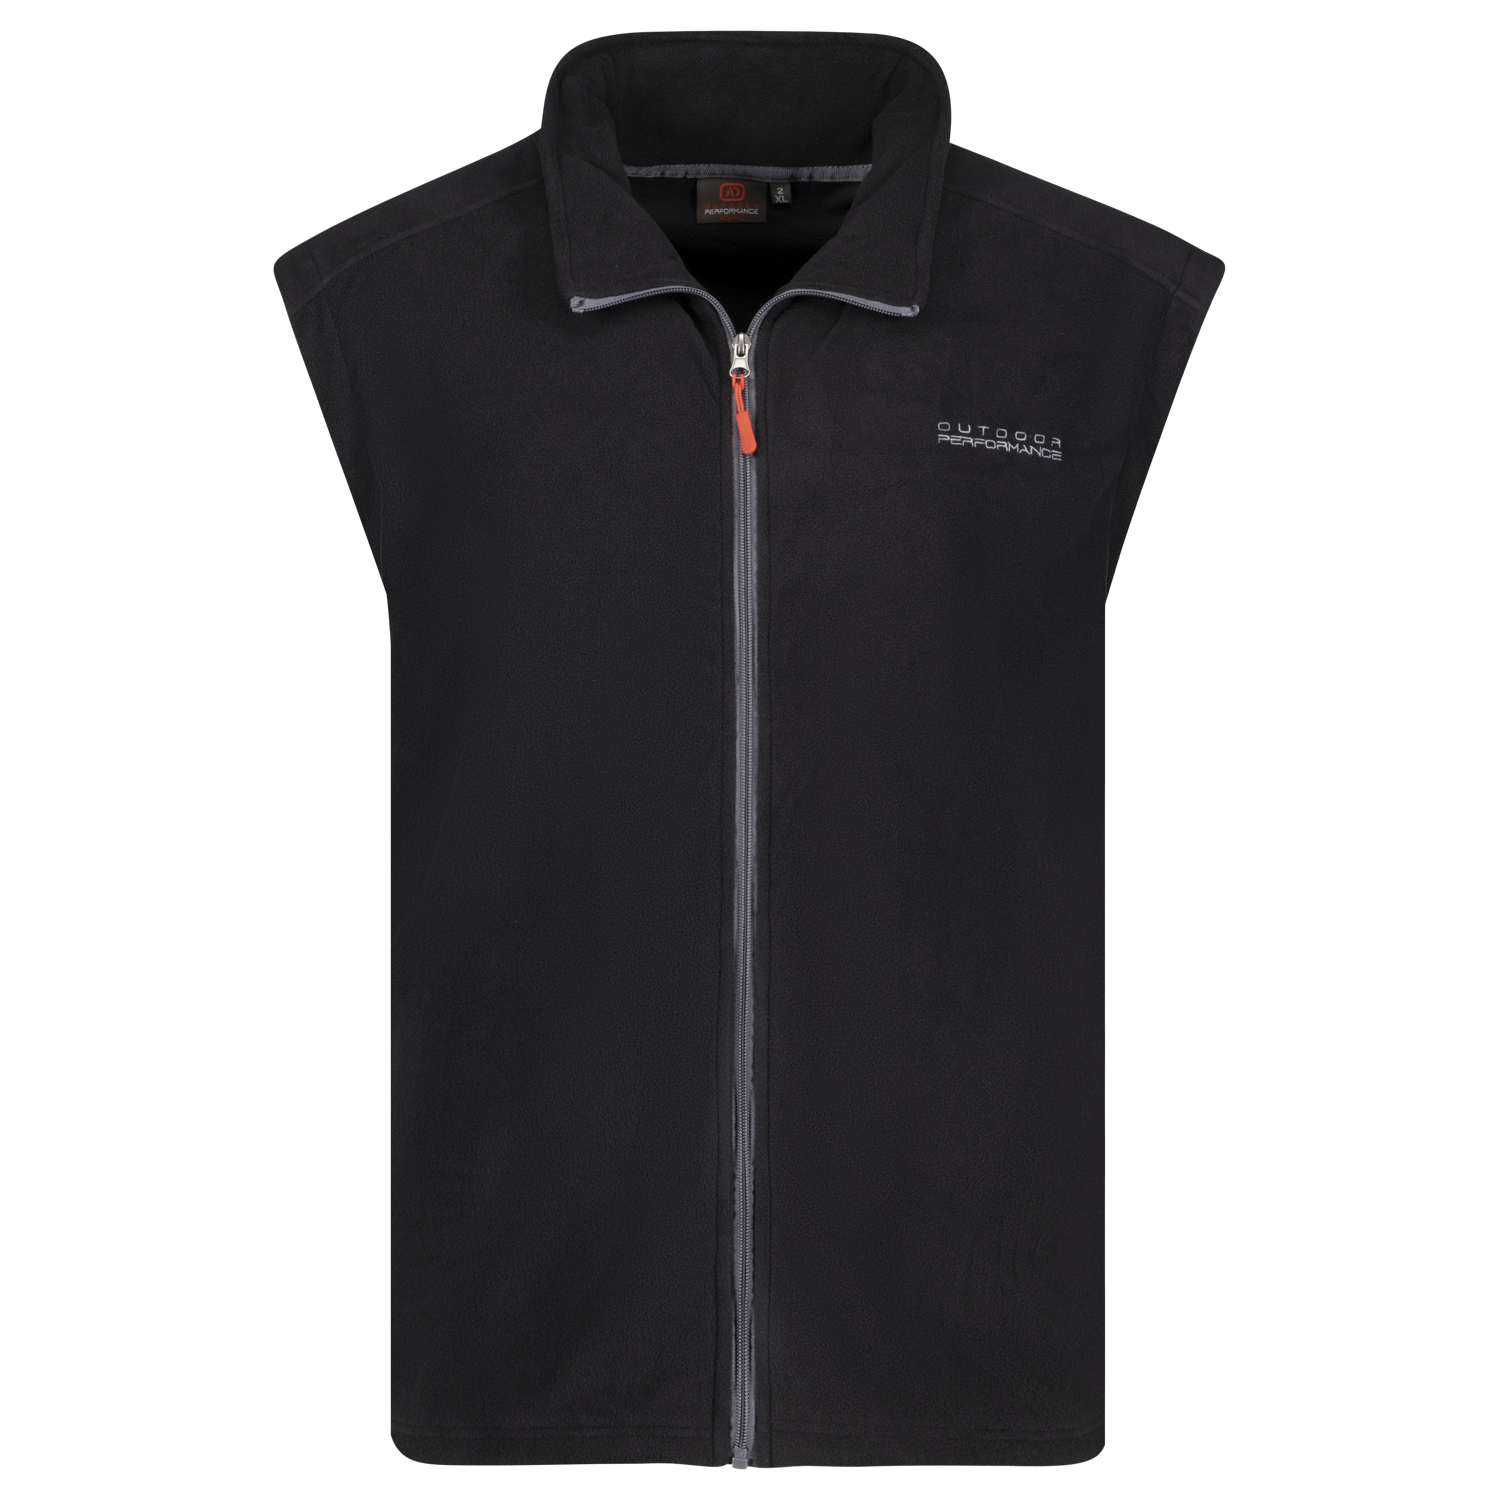 Fleece vest in black Series Montreal by Adamo up to oversize 12XL